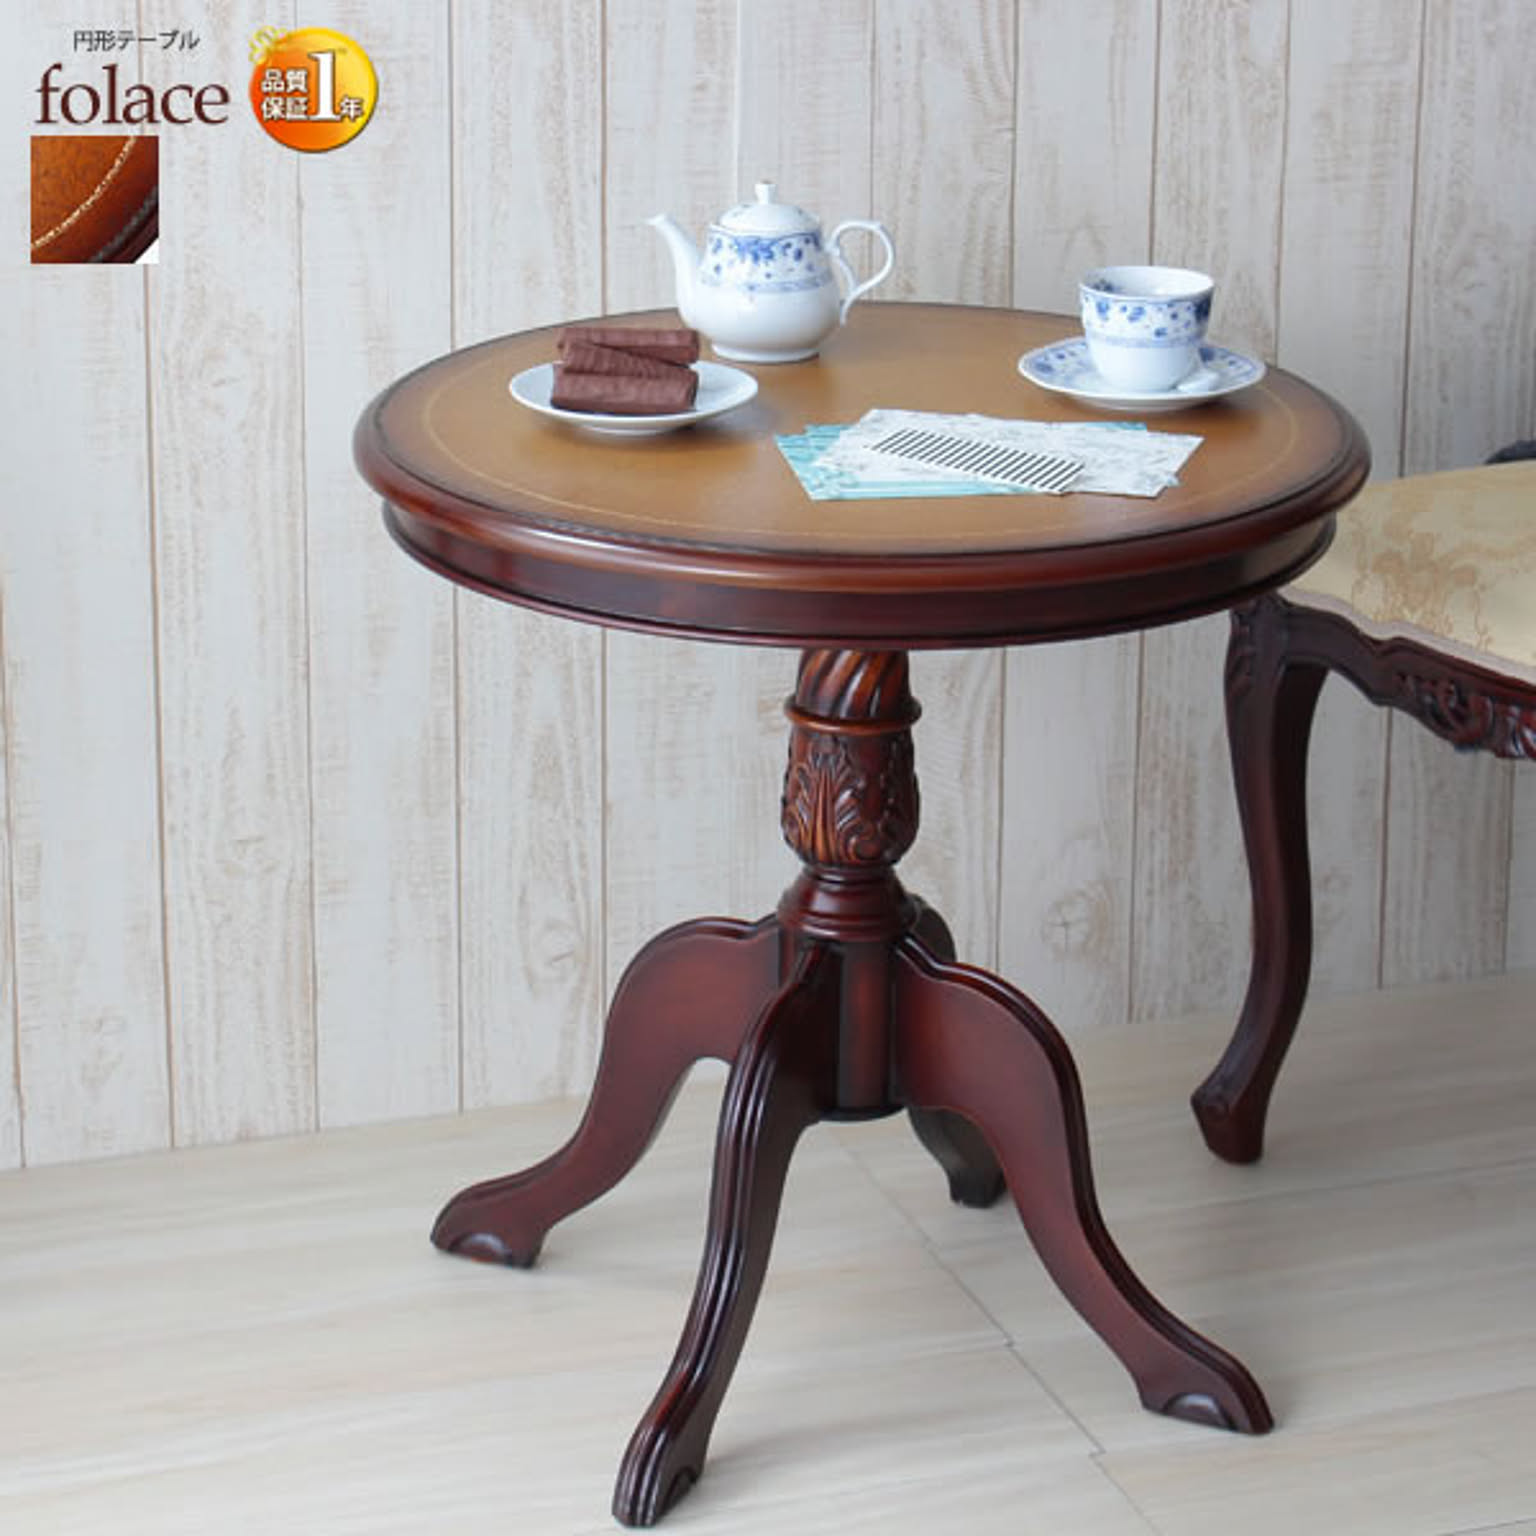 円卓 ダイニングテーブル コーヒーテーブル カフェテーブル【folace】 ブラウン(brown) (ロマンティック) 円形 丸型 アンティーク調 